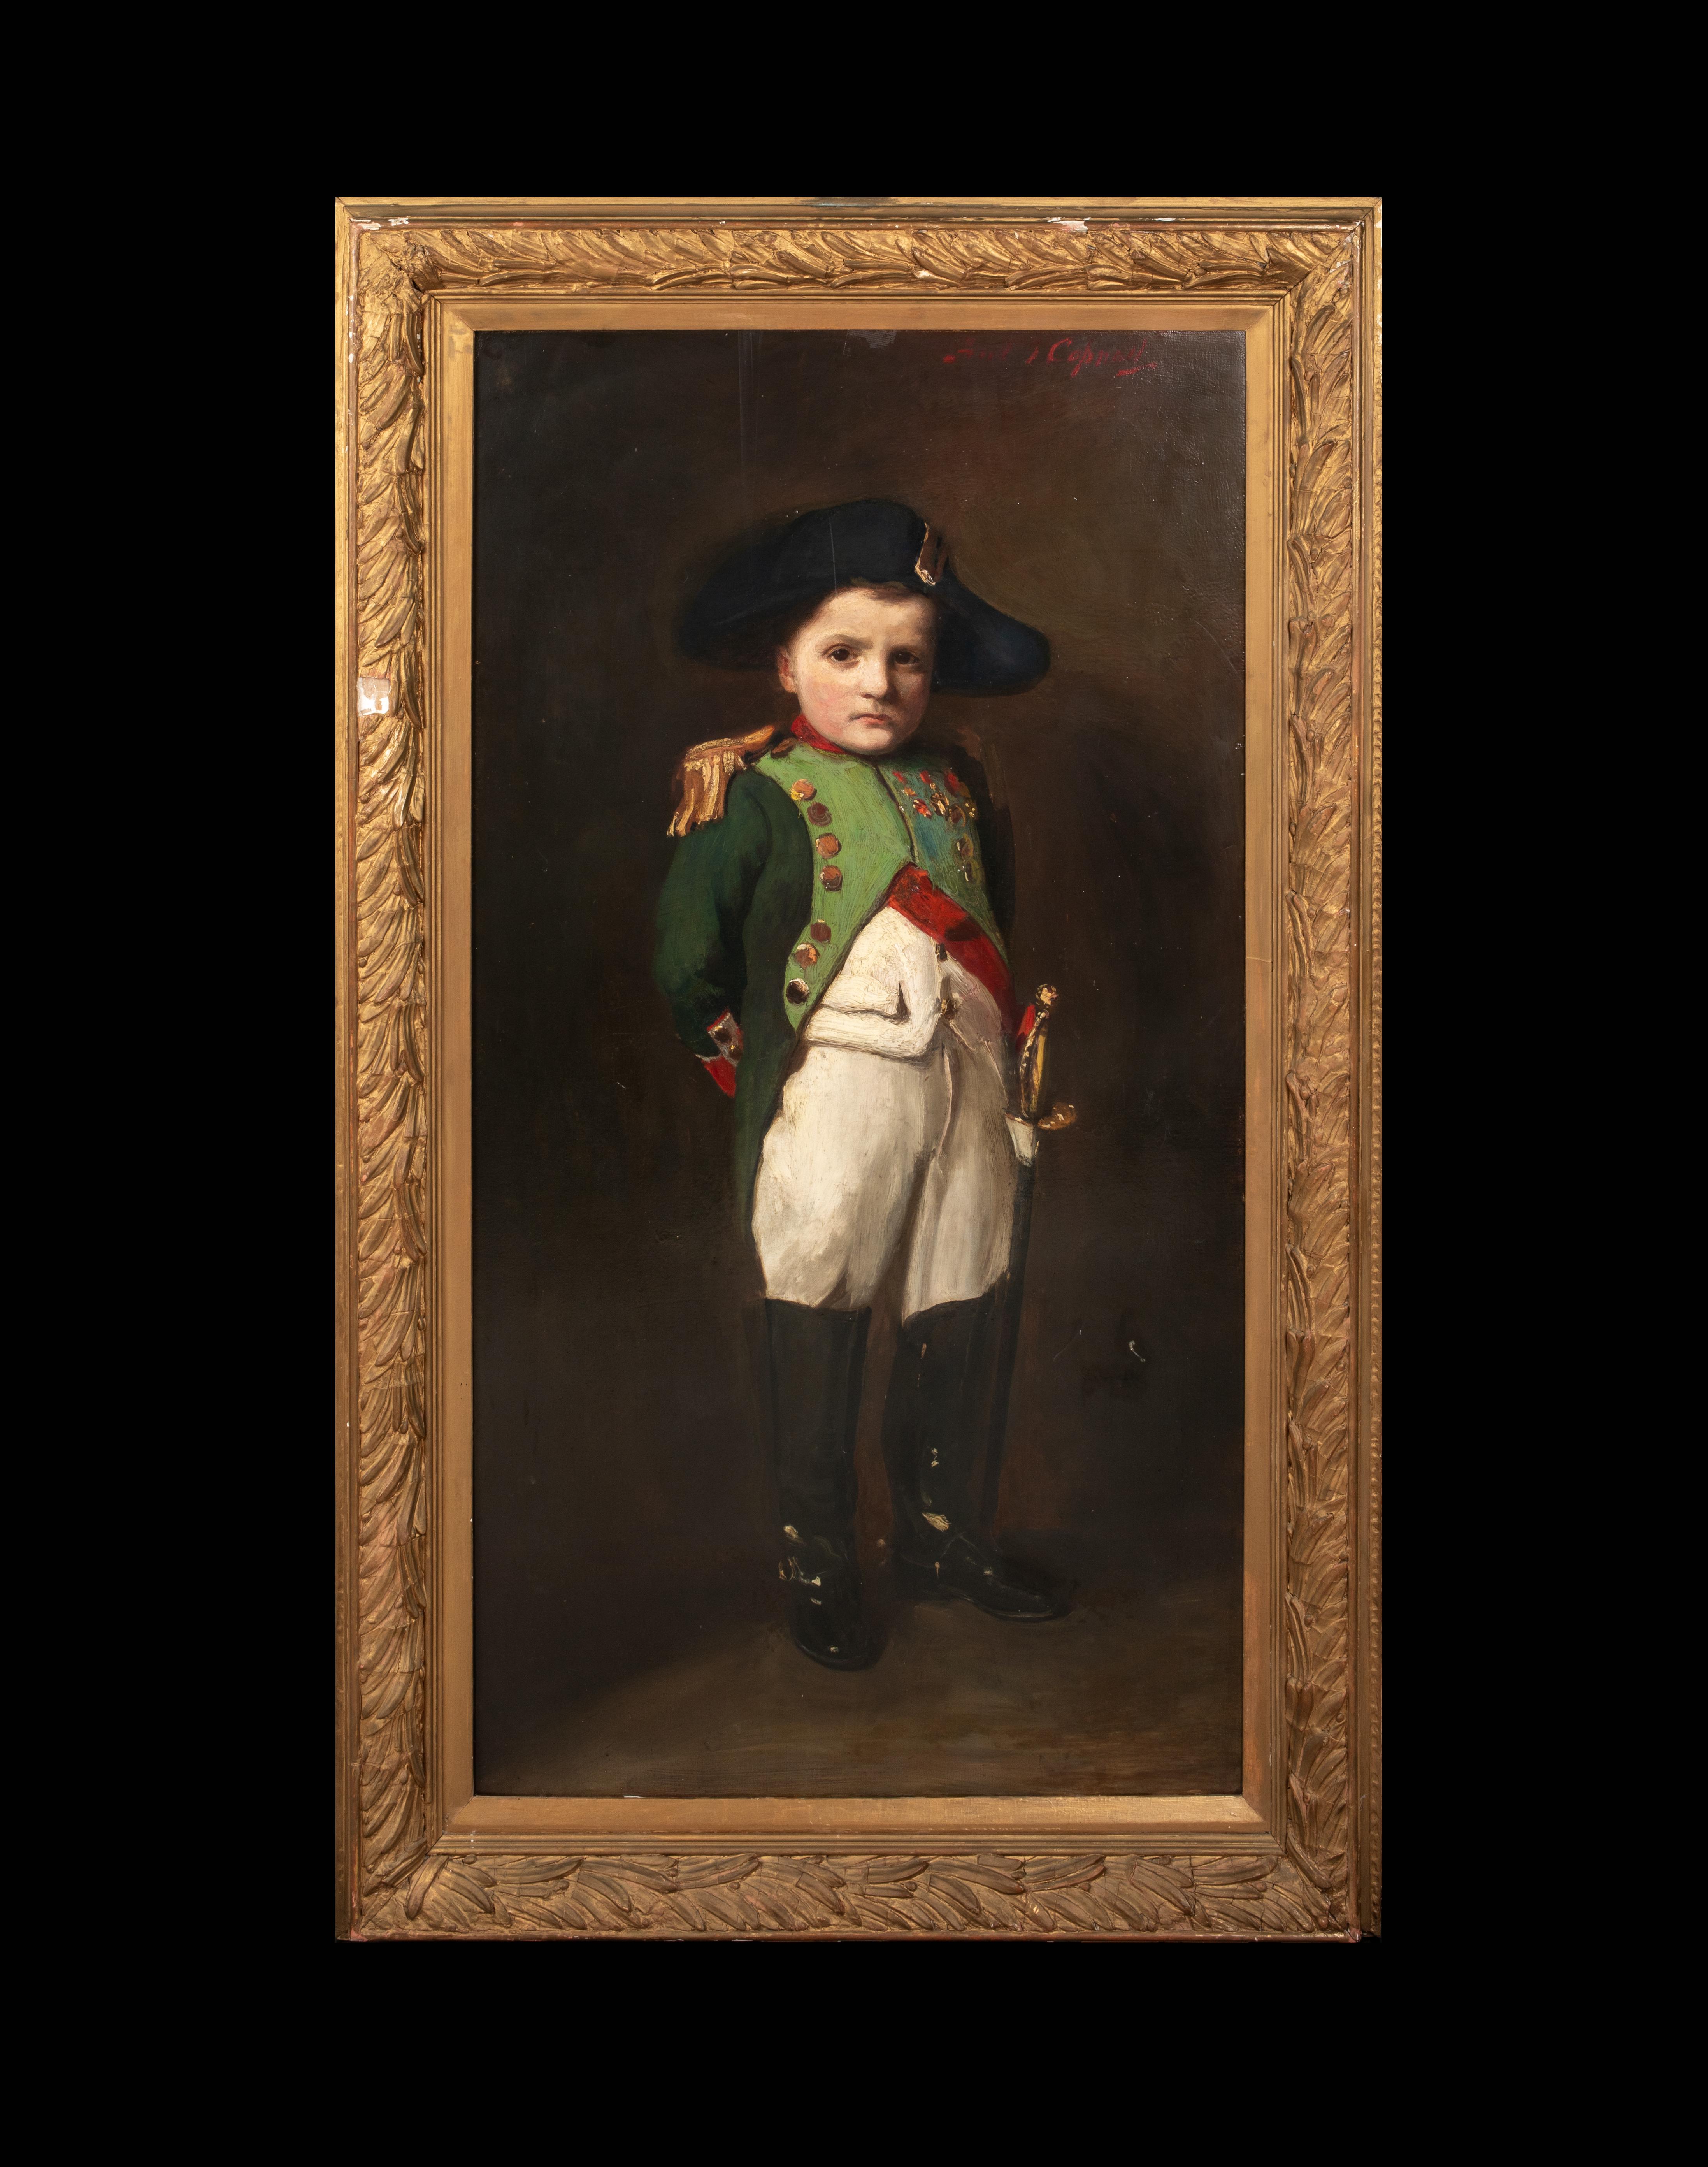 Portrait d'un enfant en Napoléon Bonaparte, 19e siècle   FRANK THOMAS COPNALL  - Painting de Unknown